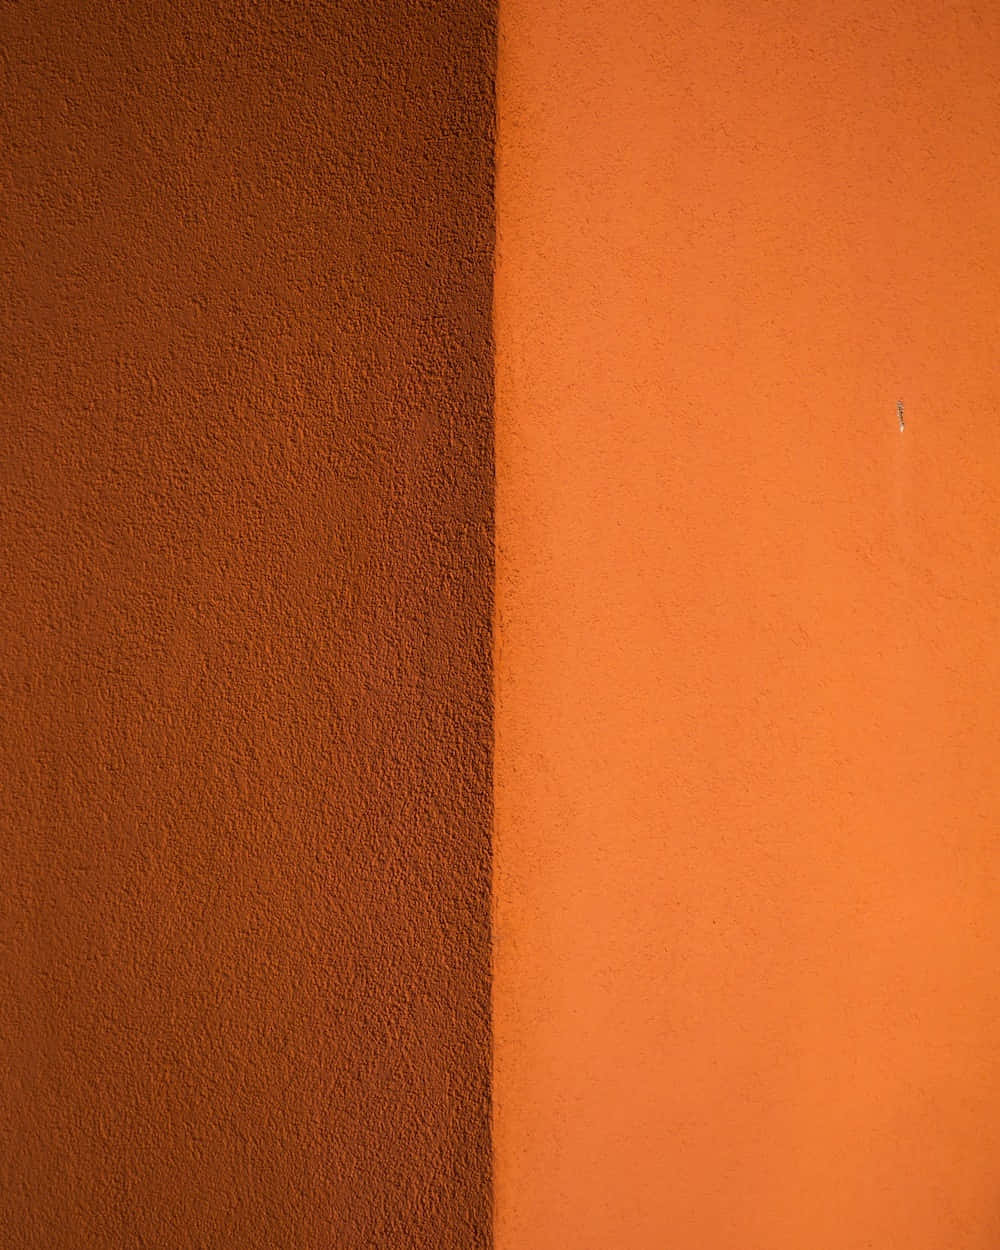 Burnt Orange Background Brown Texture